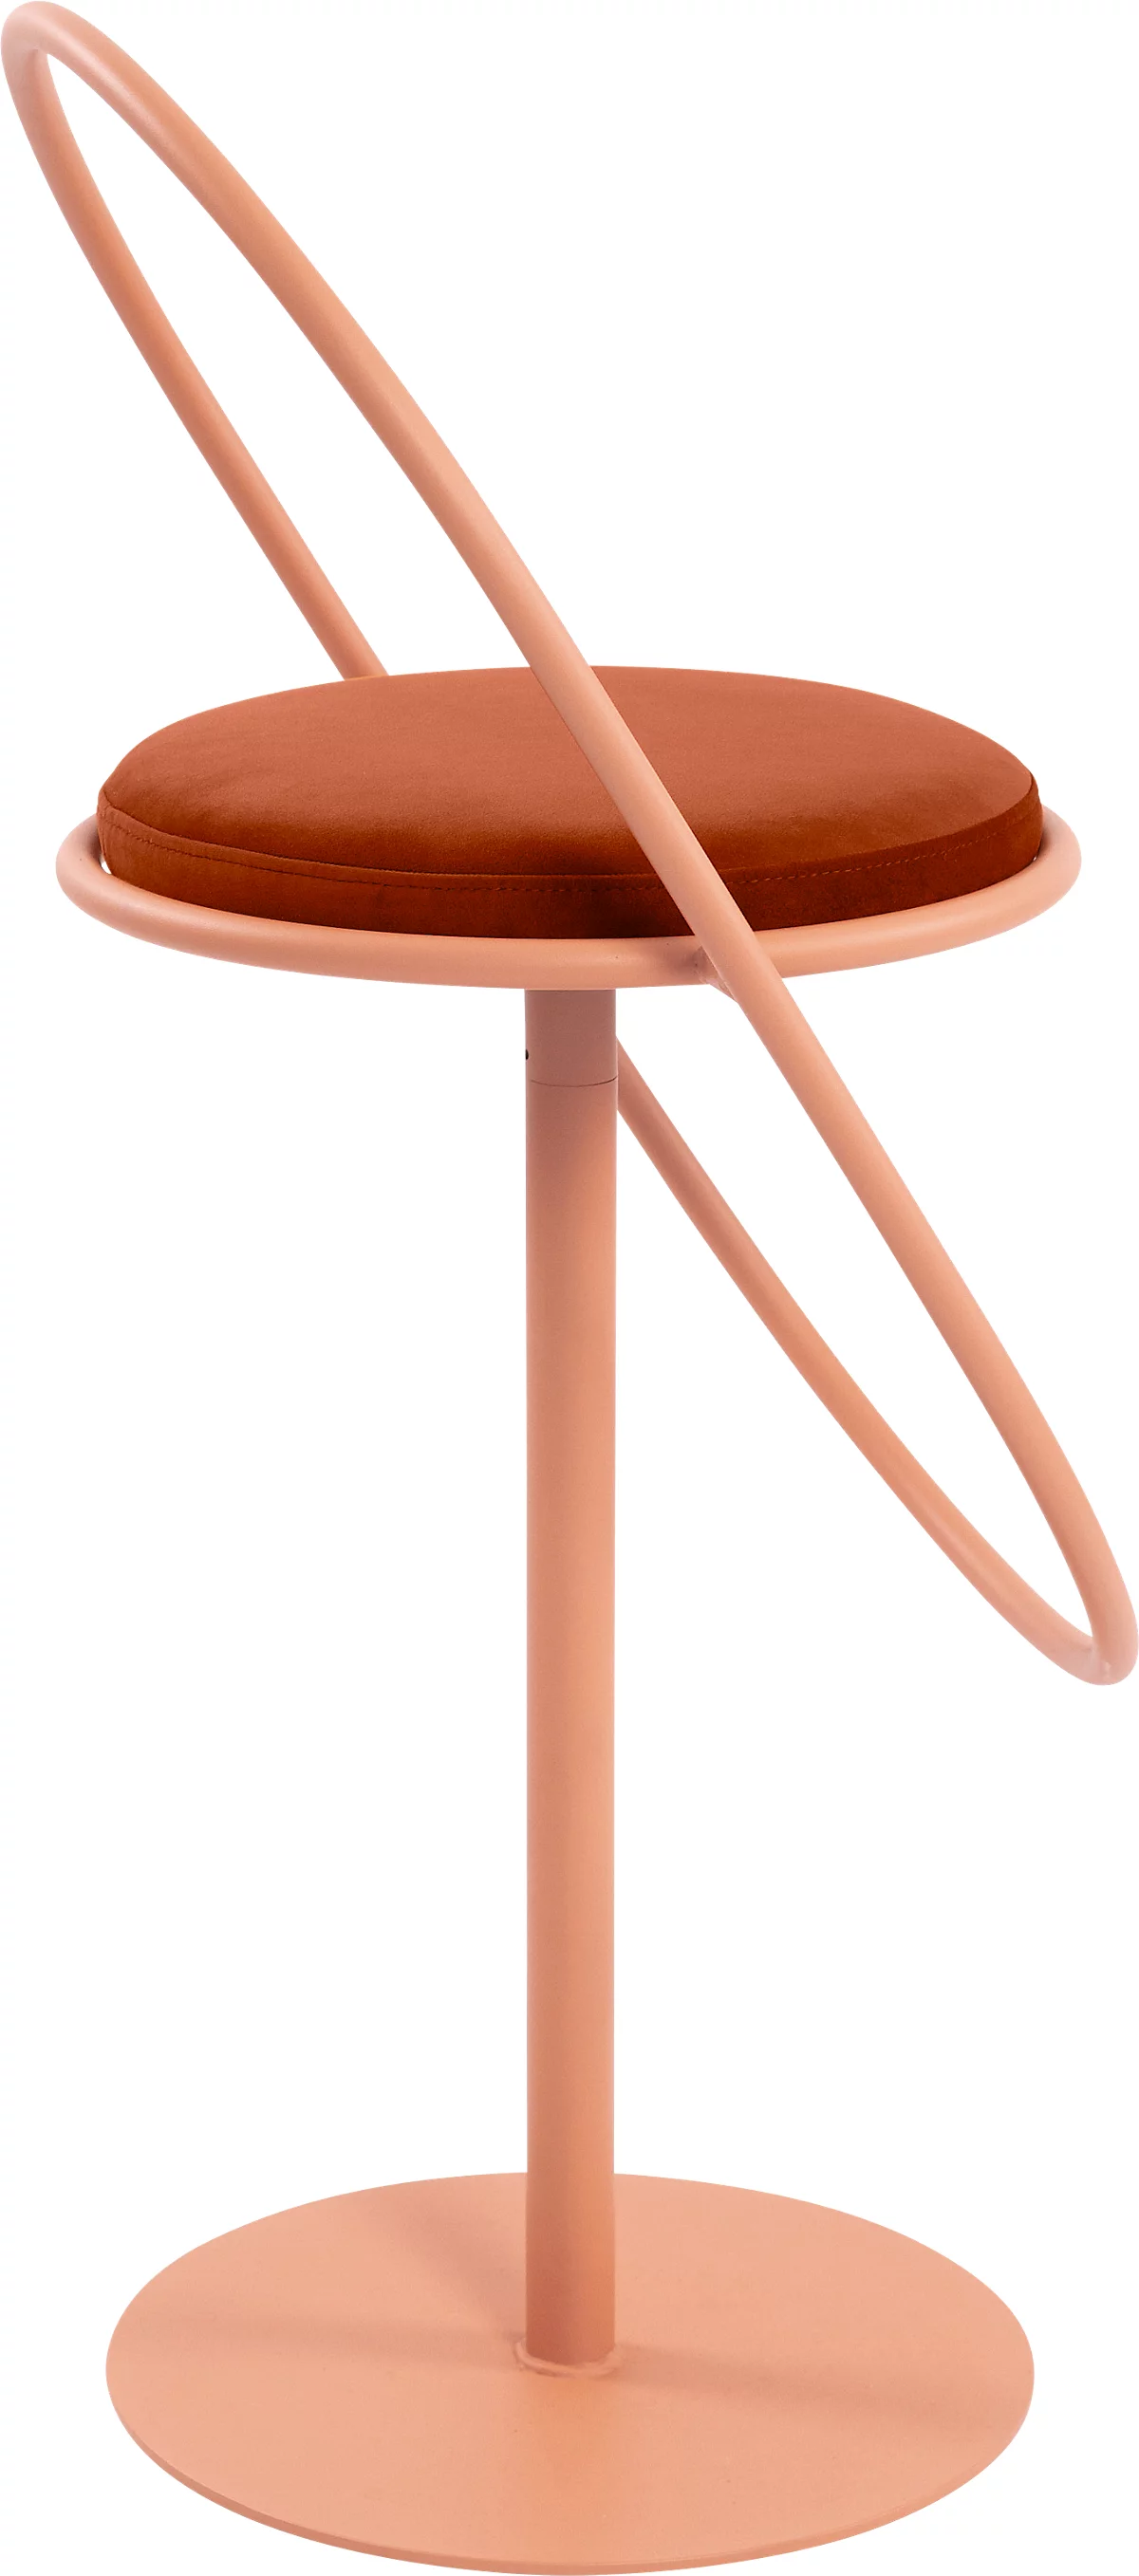 Barhocker Paperflow Saturne, mit Rückenlehne, Sitzhöhe 765 mm, gepolstert, zu 100 % recycelbar, Samtbezug rostfarben, Gestell rosa